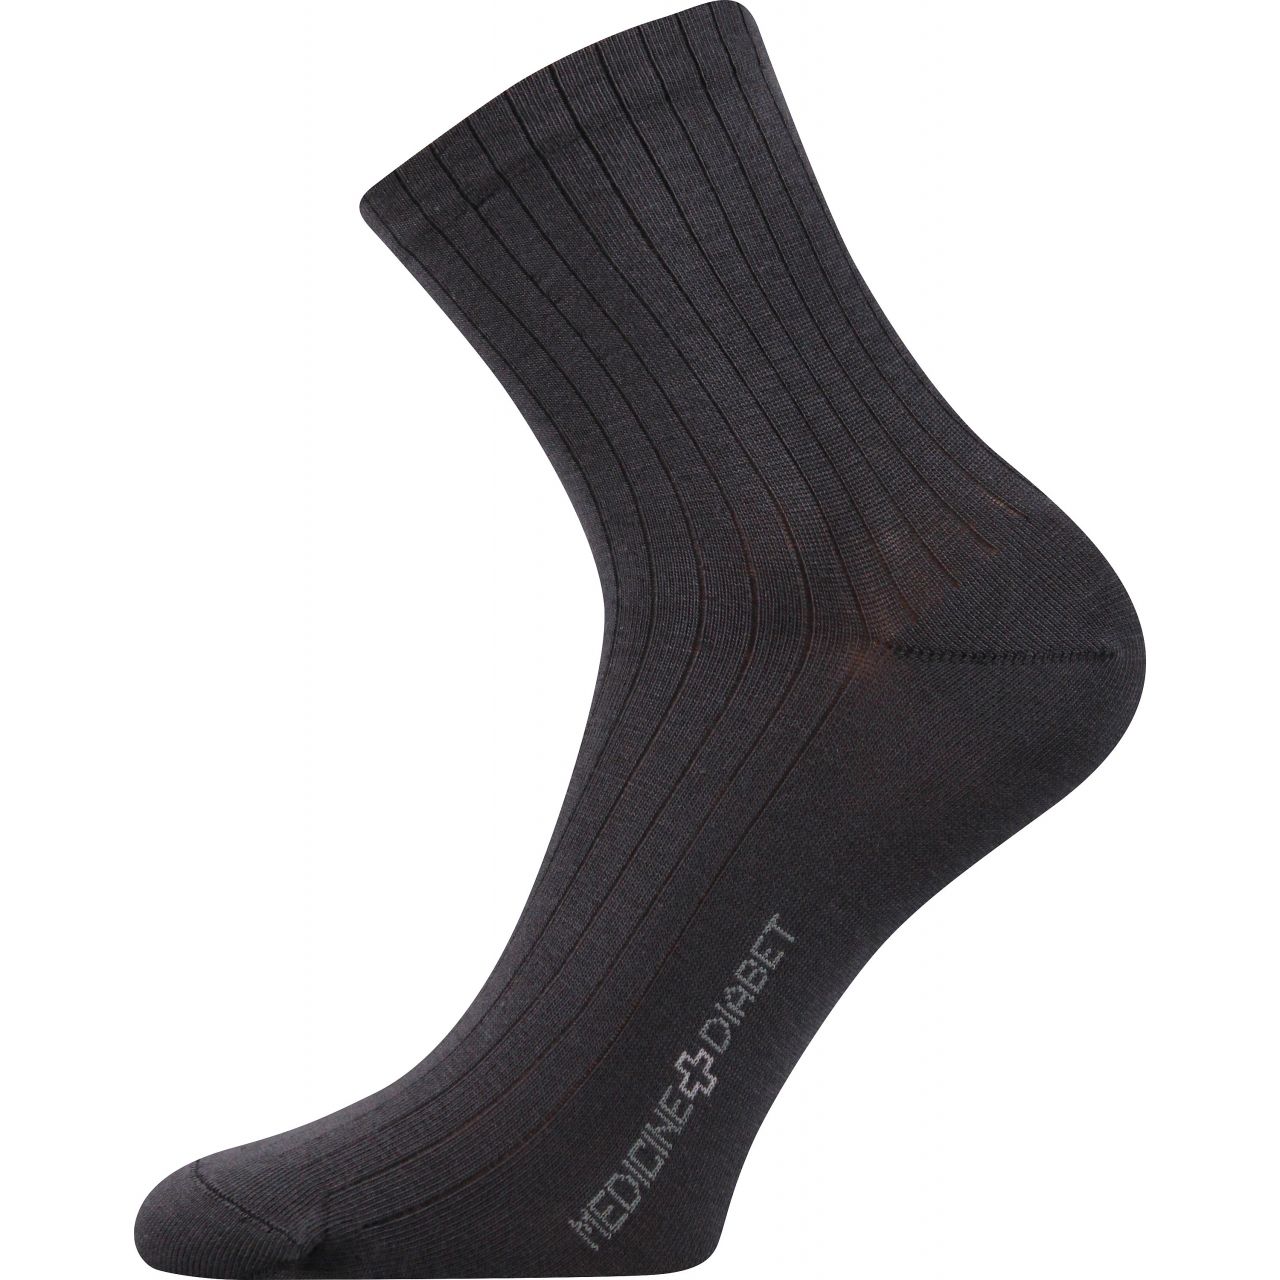 Ponožky zdravotní Lonka Demedik - černé, 43-46